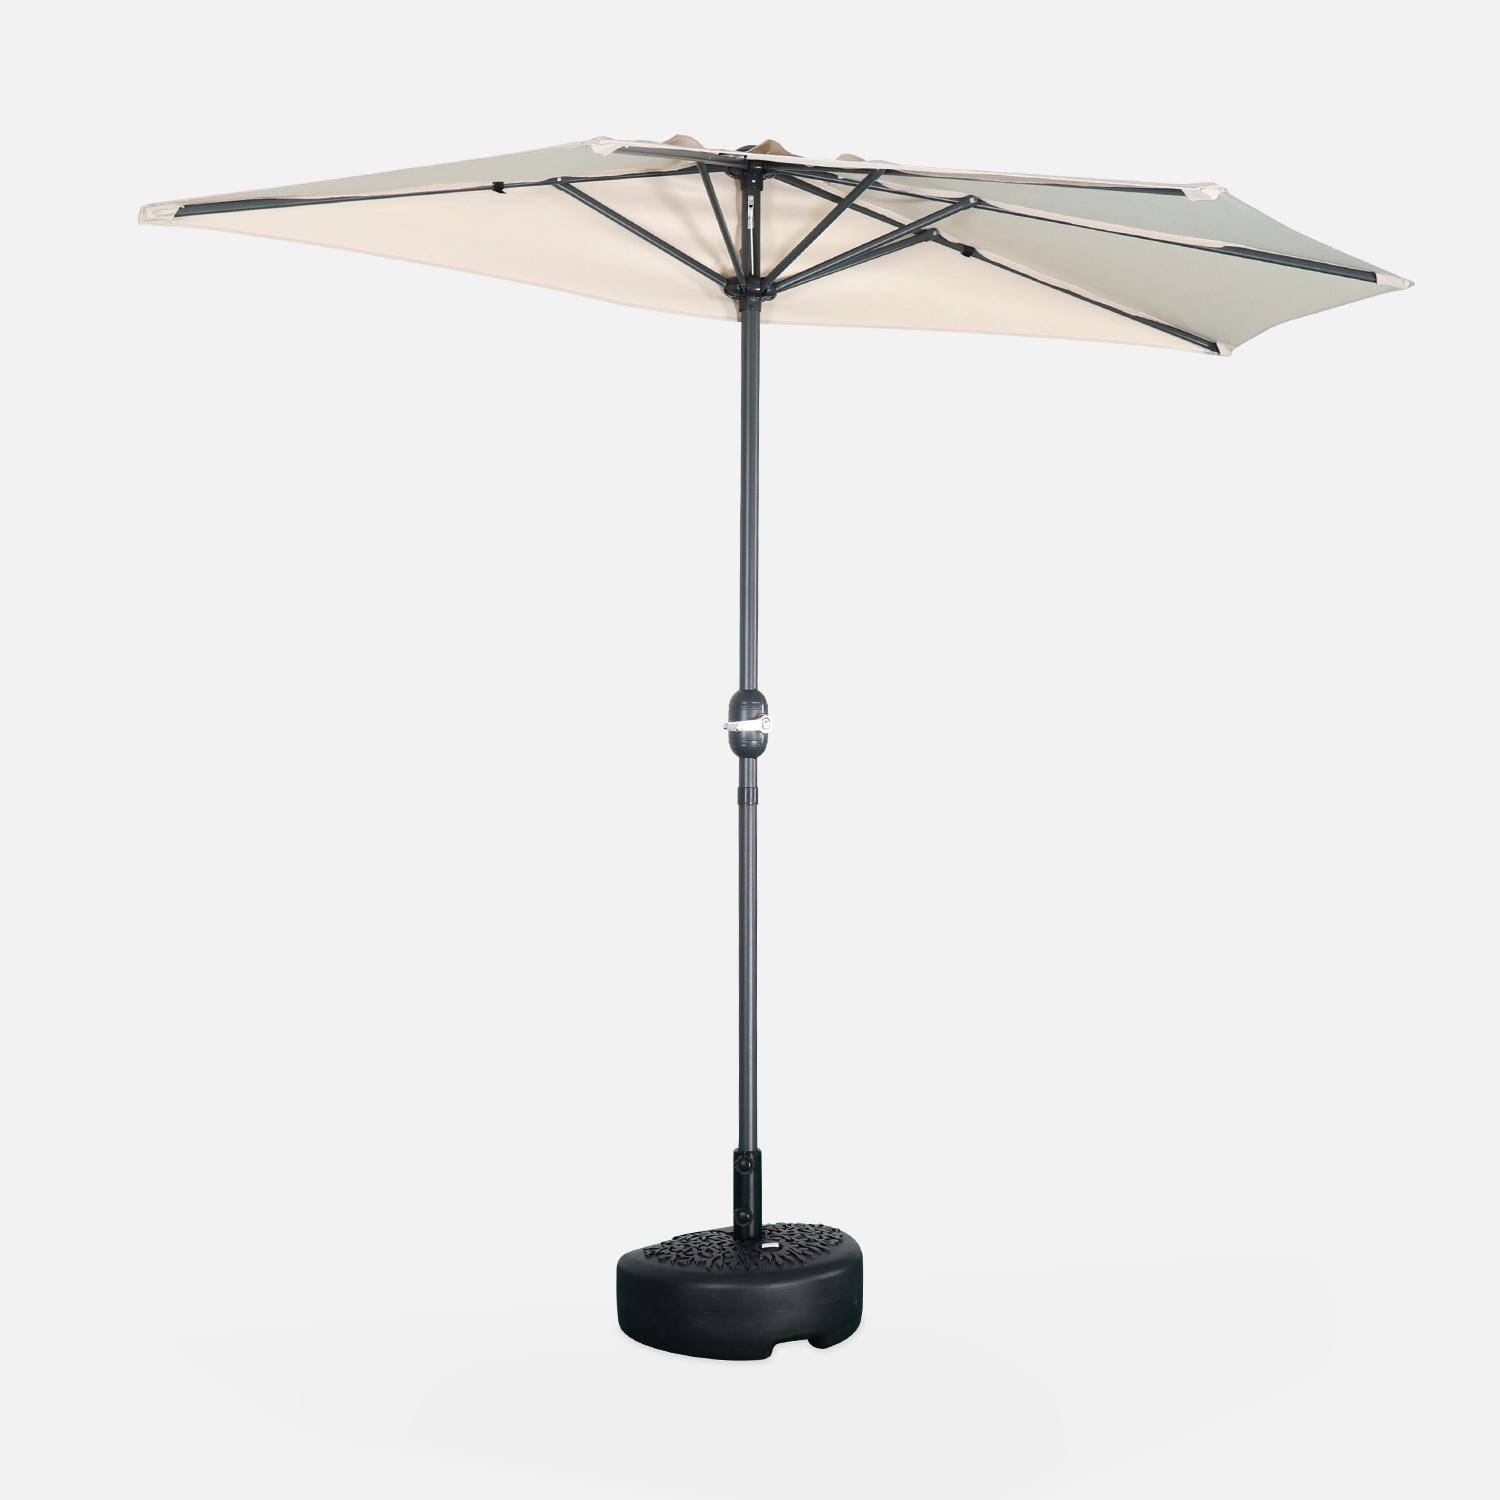  Parasol para balcón Ø250cm - CALVI - Medio parasol recto, mástil de aluminio con manivela, tejido arena,sweeek,Photo2